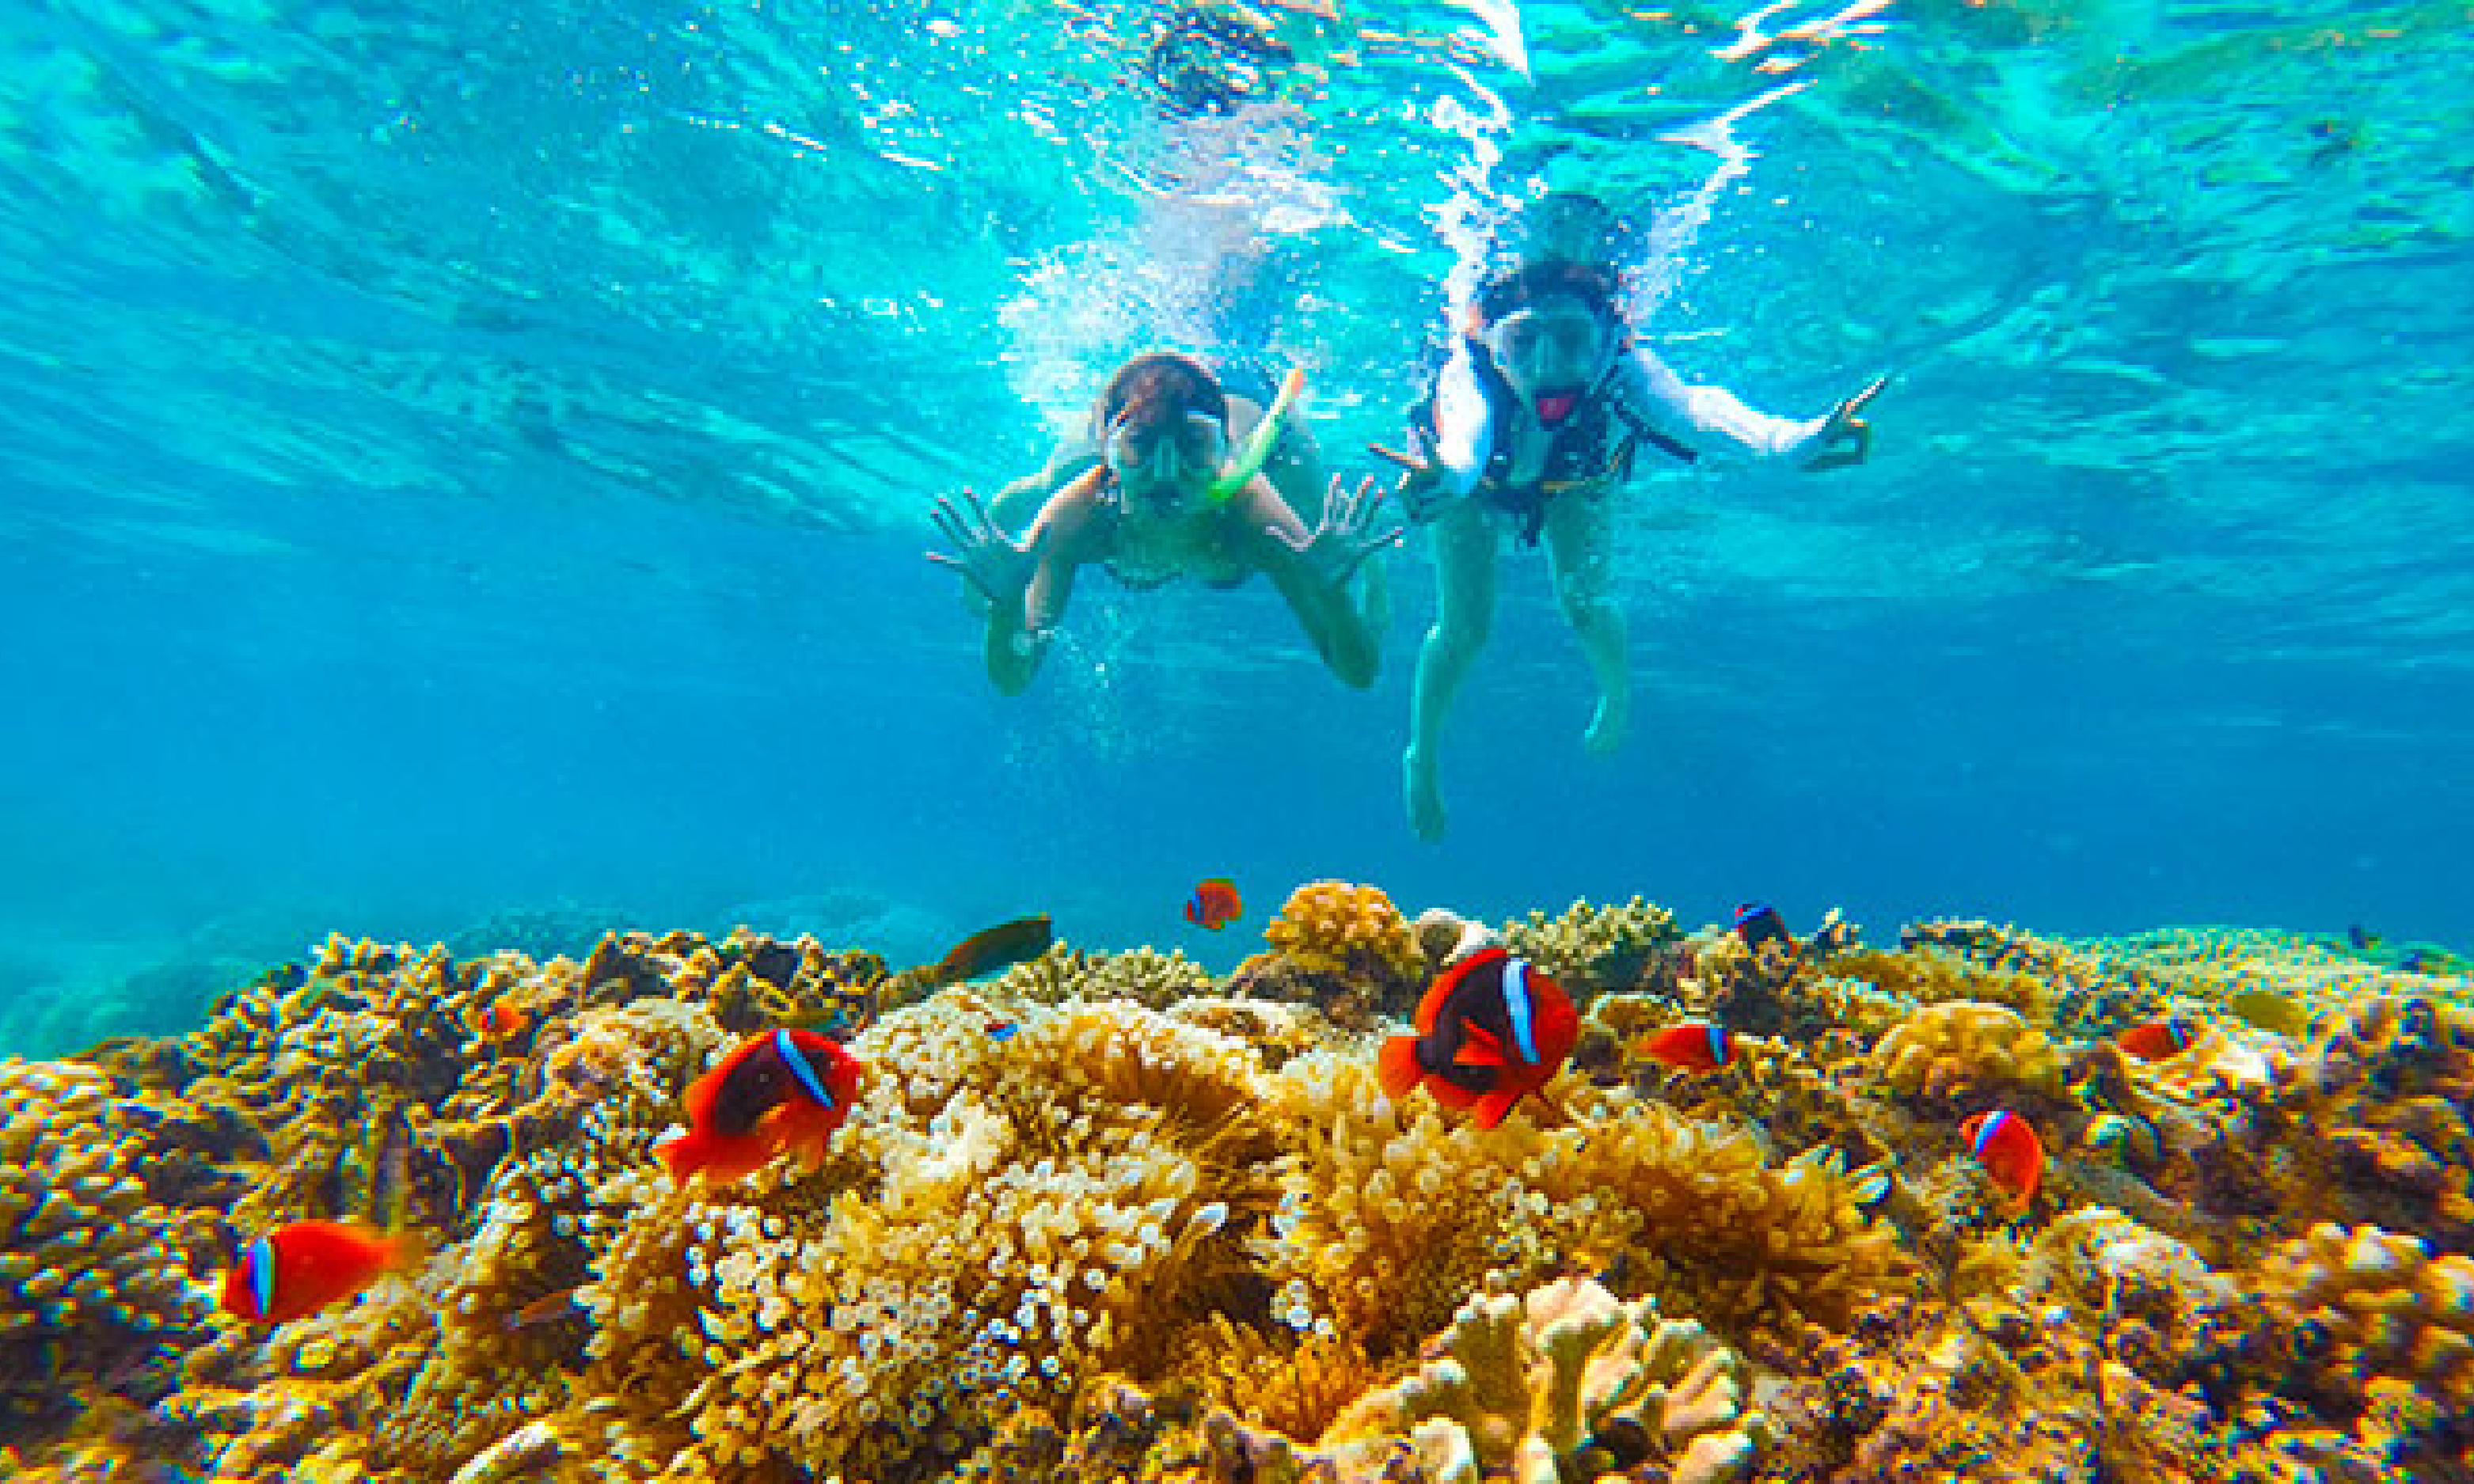 サンゴ礁が広がる美しい海で、女性二人がシュノーケリングをしている様子
オレンジ色のカクレクマノミが優雅に泳いでいる